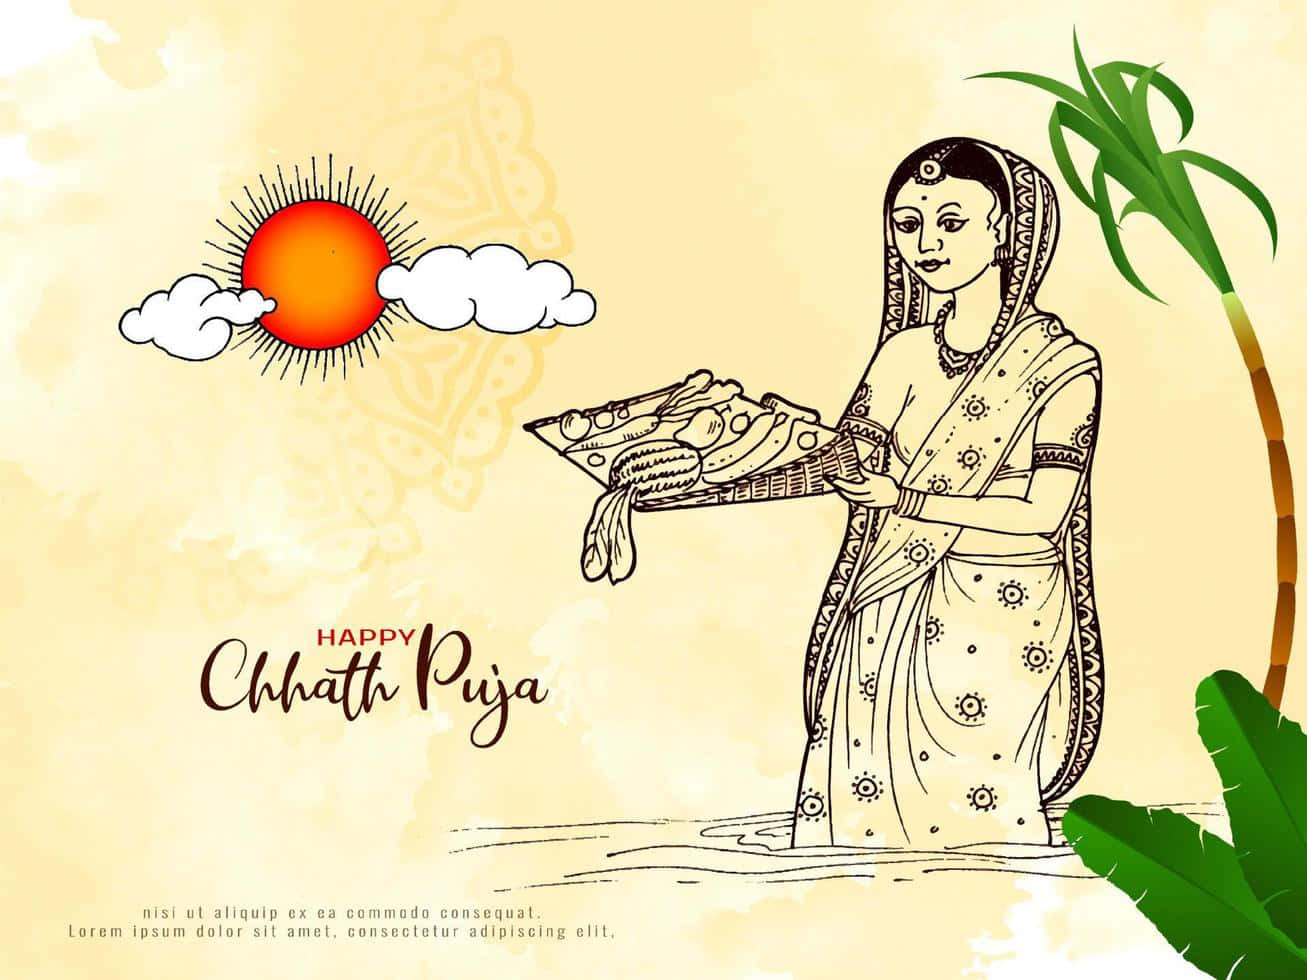 Chhath Puja 2022 Katha: छठ पूजा के दिन सुनते हैं छठी मइया की यह कथा, पूरी  होती हैं मनोकामनाएं - chhath puja 2022 vrat katha read story of raja  priyambad kar – News18 हिंदी